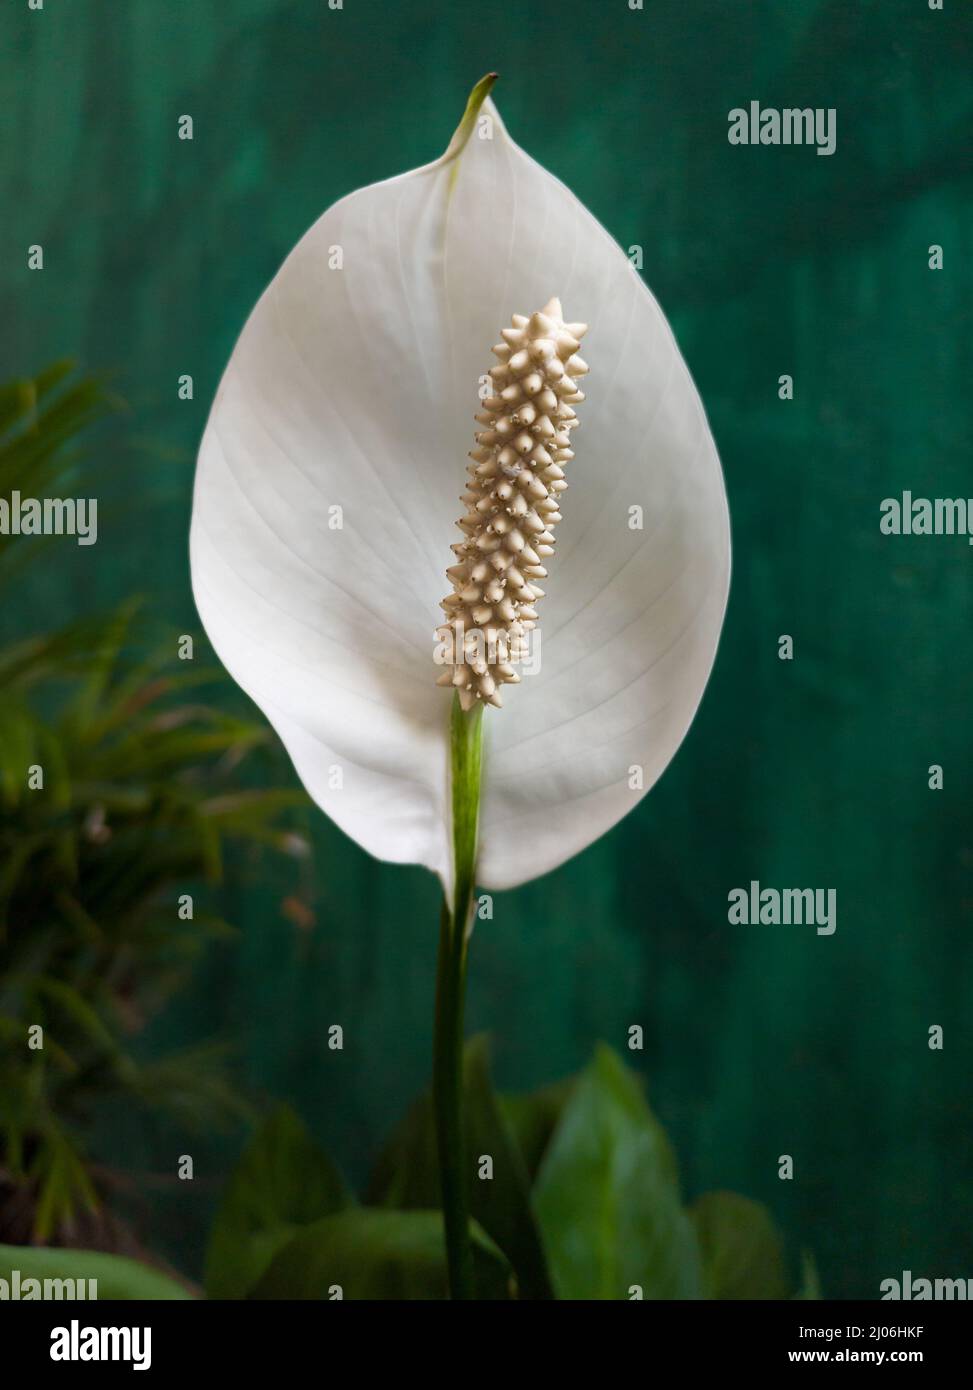 flor de anturio simple tomada en profundidad de campo poco profunda, también conocida como flor de cola, flamingo y laceleaf, en forma de lágrima, flor de color blanco Foto de stock